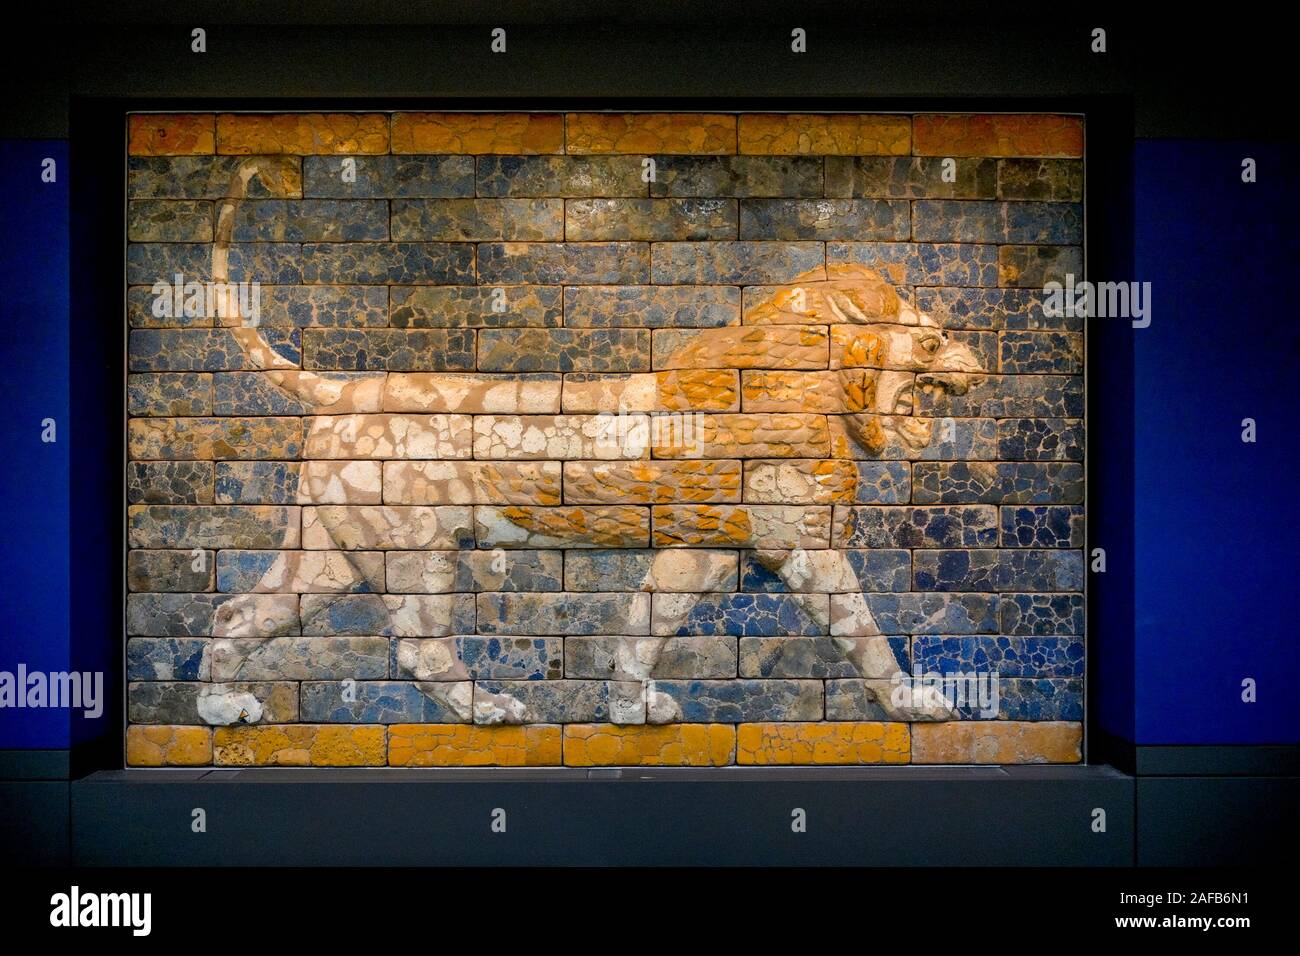 Lion aus Fliesen, ursprünglich König Nebukadnezars II palace Thronsaal, antike Stadt Babylon, das British Museum, London, England, UK. Auf Darlehen Stockfoto